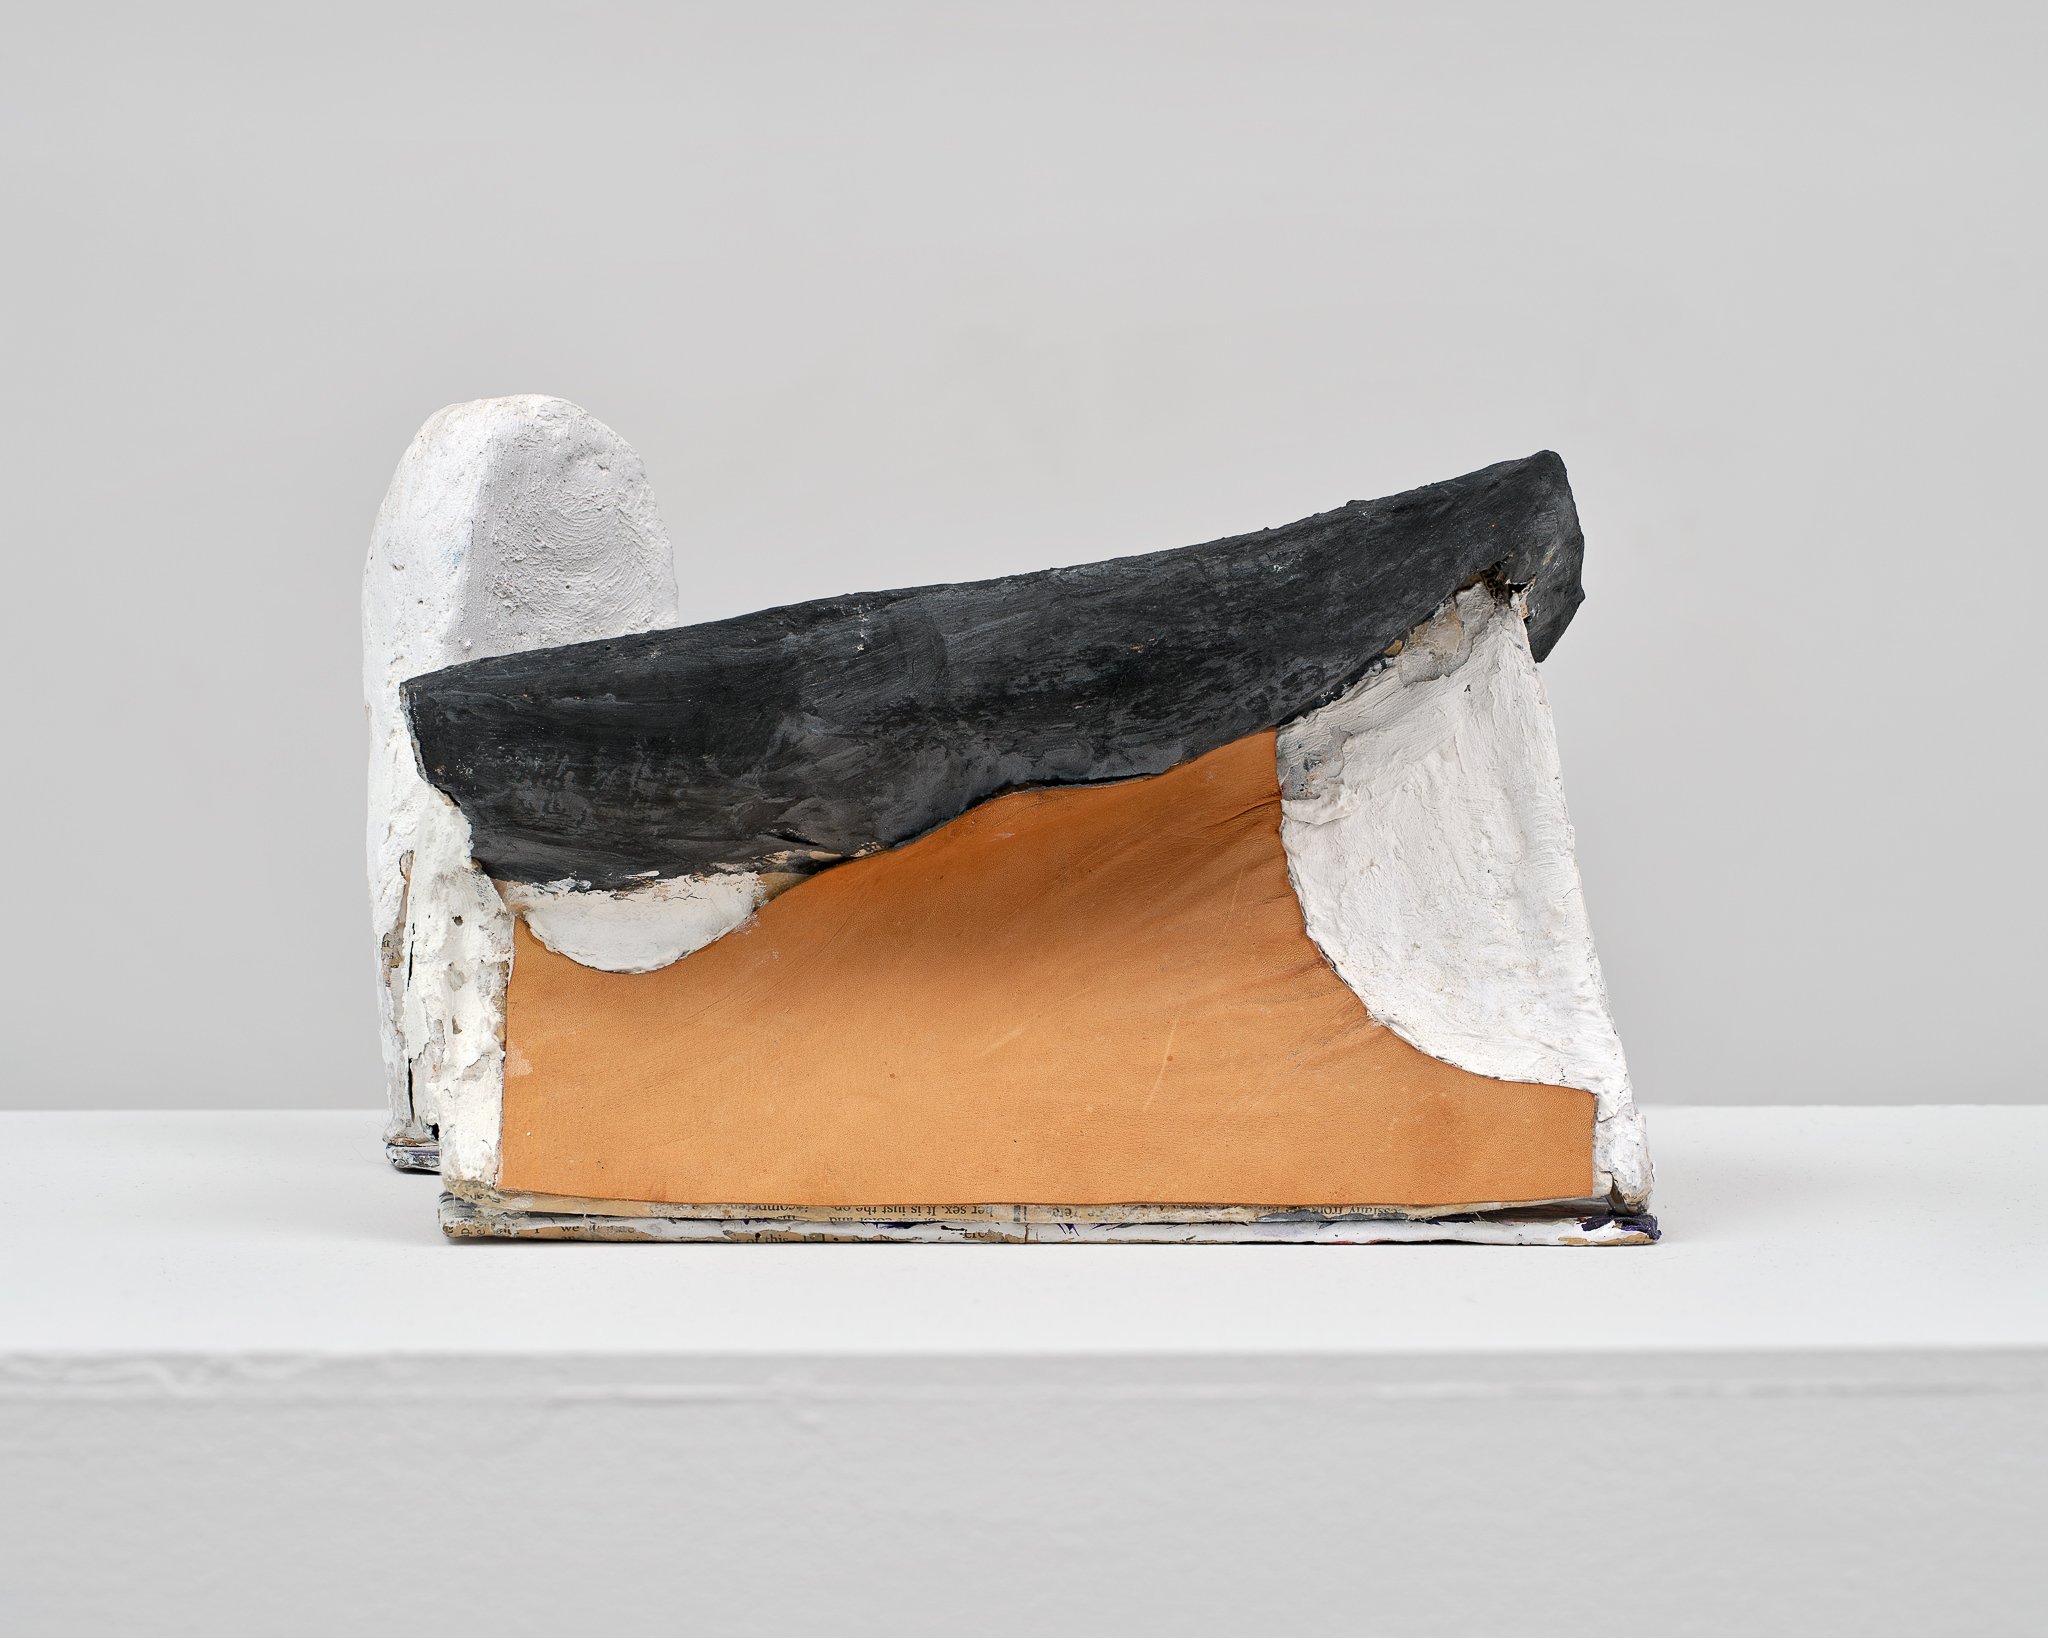   Ronchamp  (detail) ,  2022. Papier-mâché, plaster, acrylic, leather. 7 x 11 x 10 inches. 